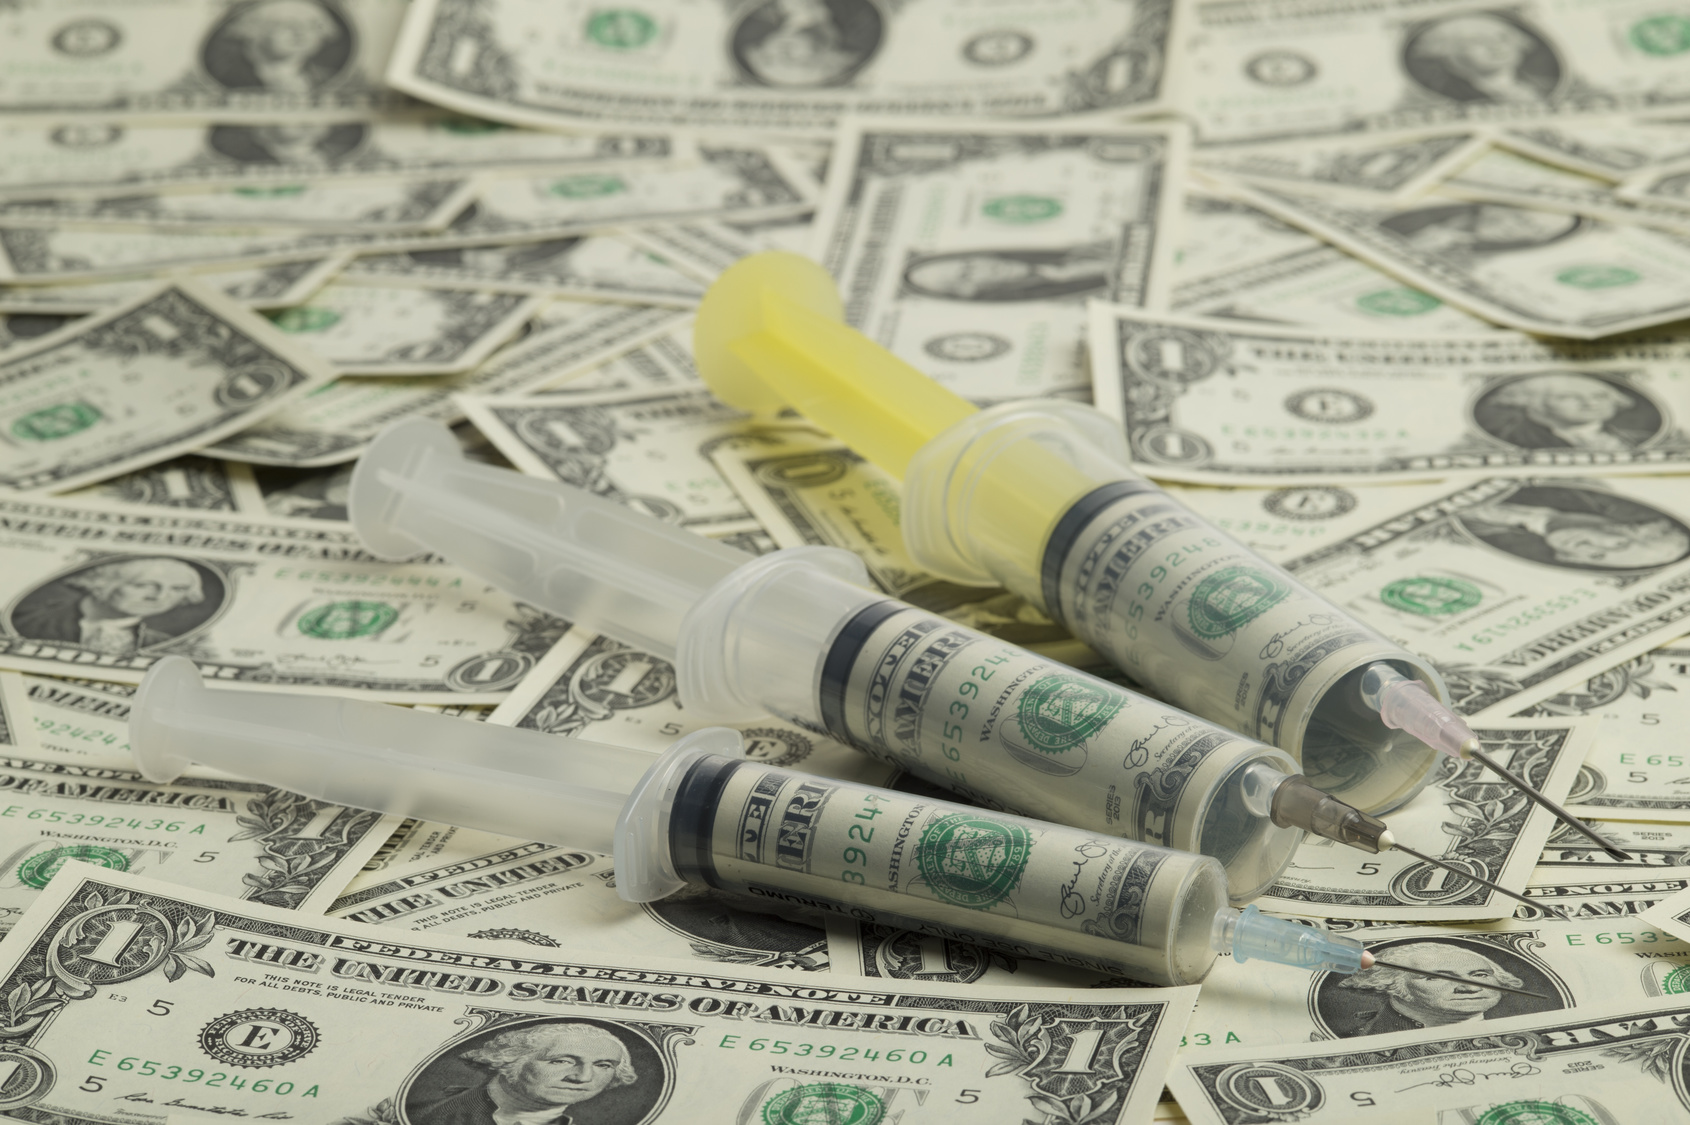 Syringe and money